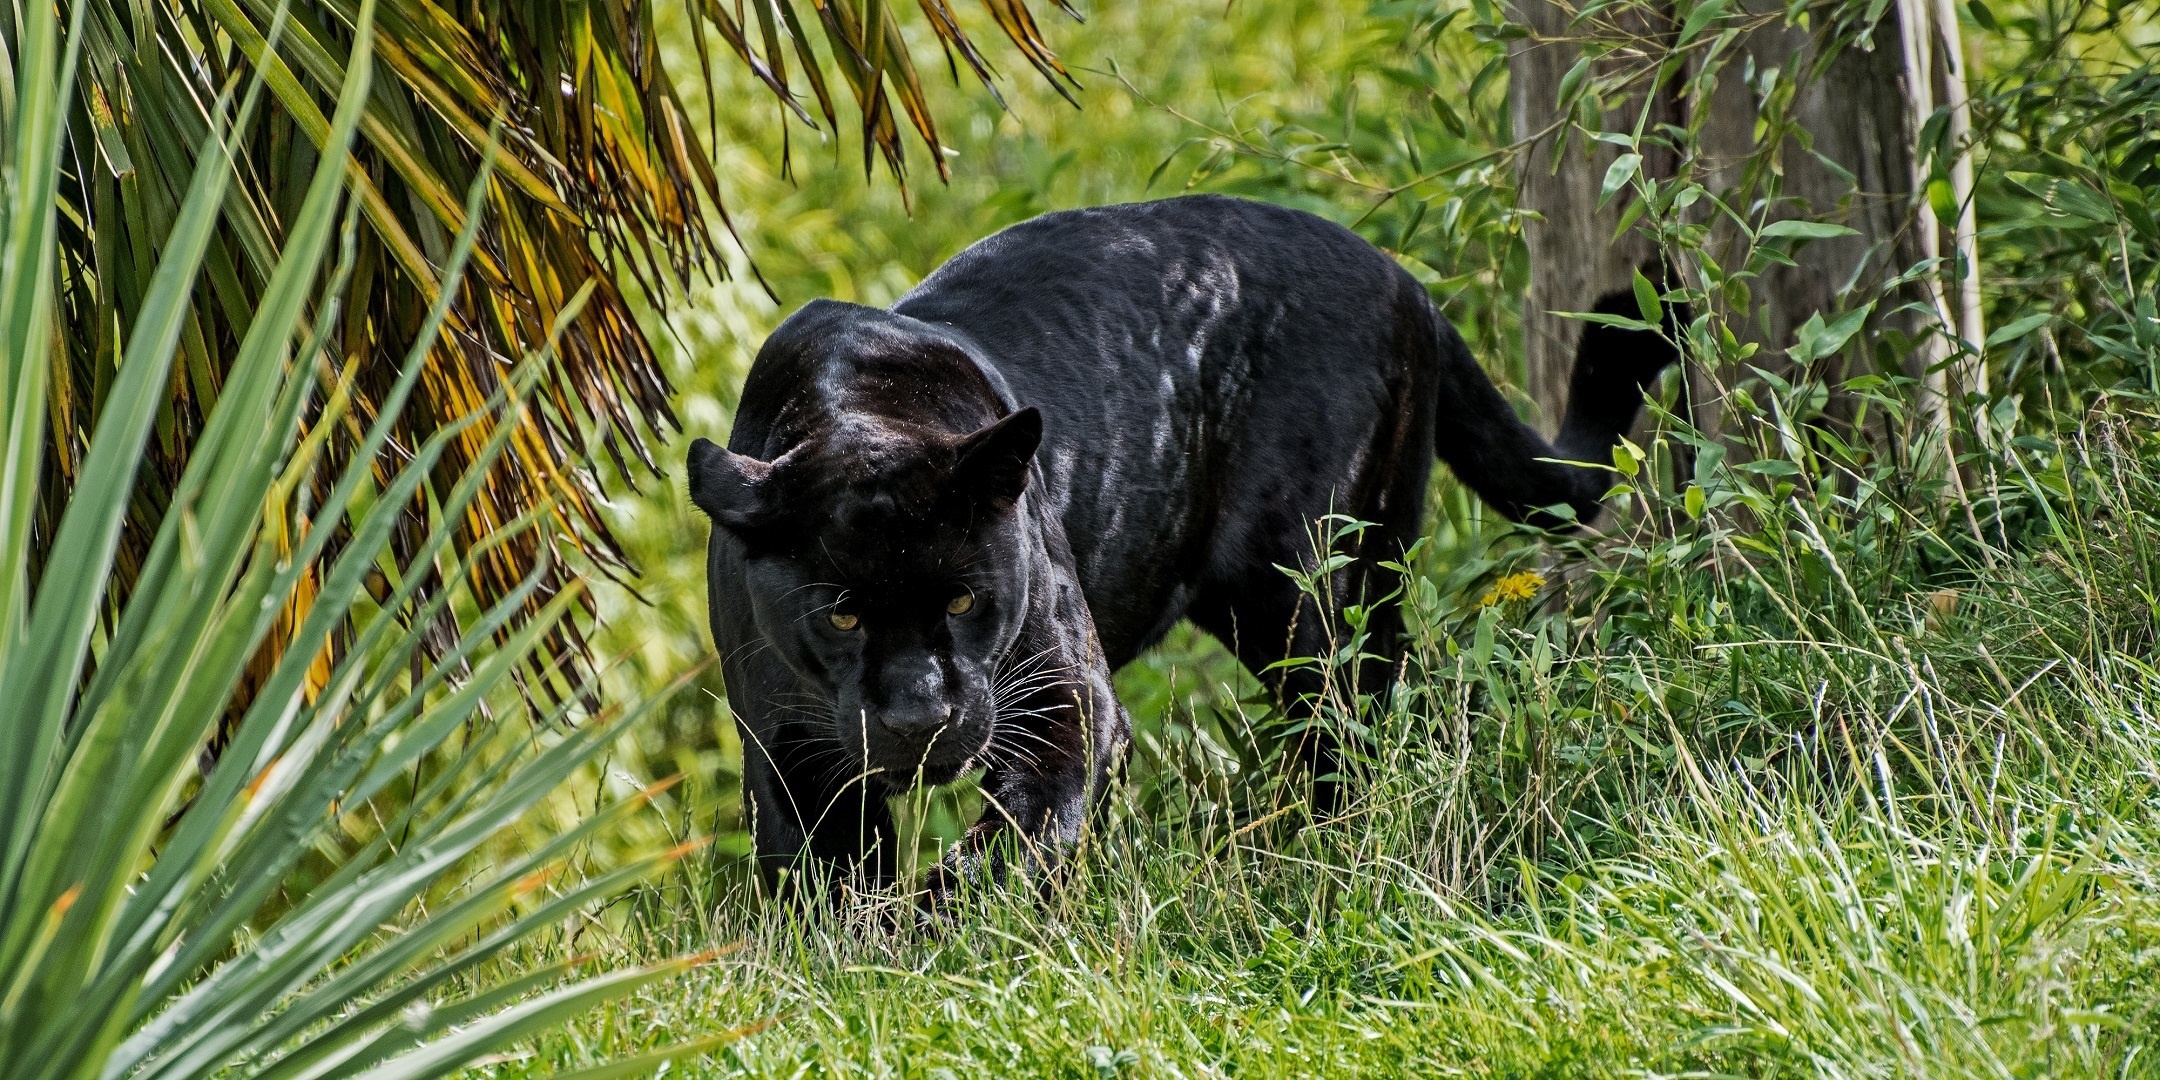 Скачать обои бесплатно Животные, Кошки, Черная Пантера картинка на рабочий стол ПК